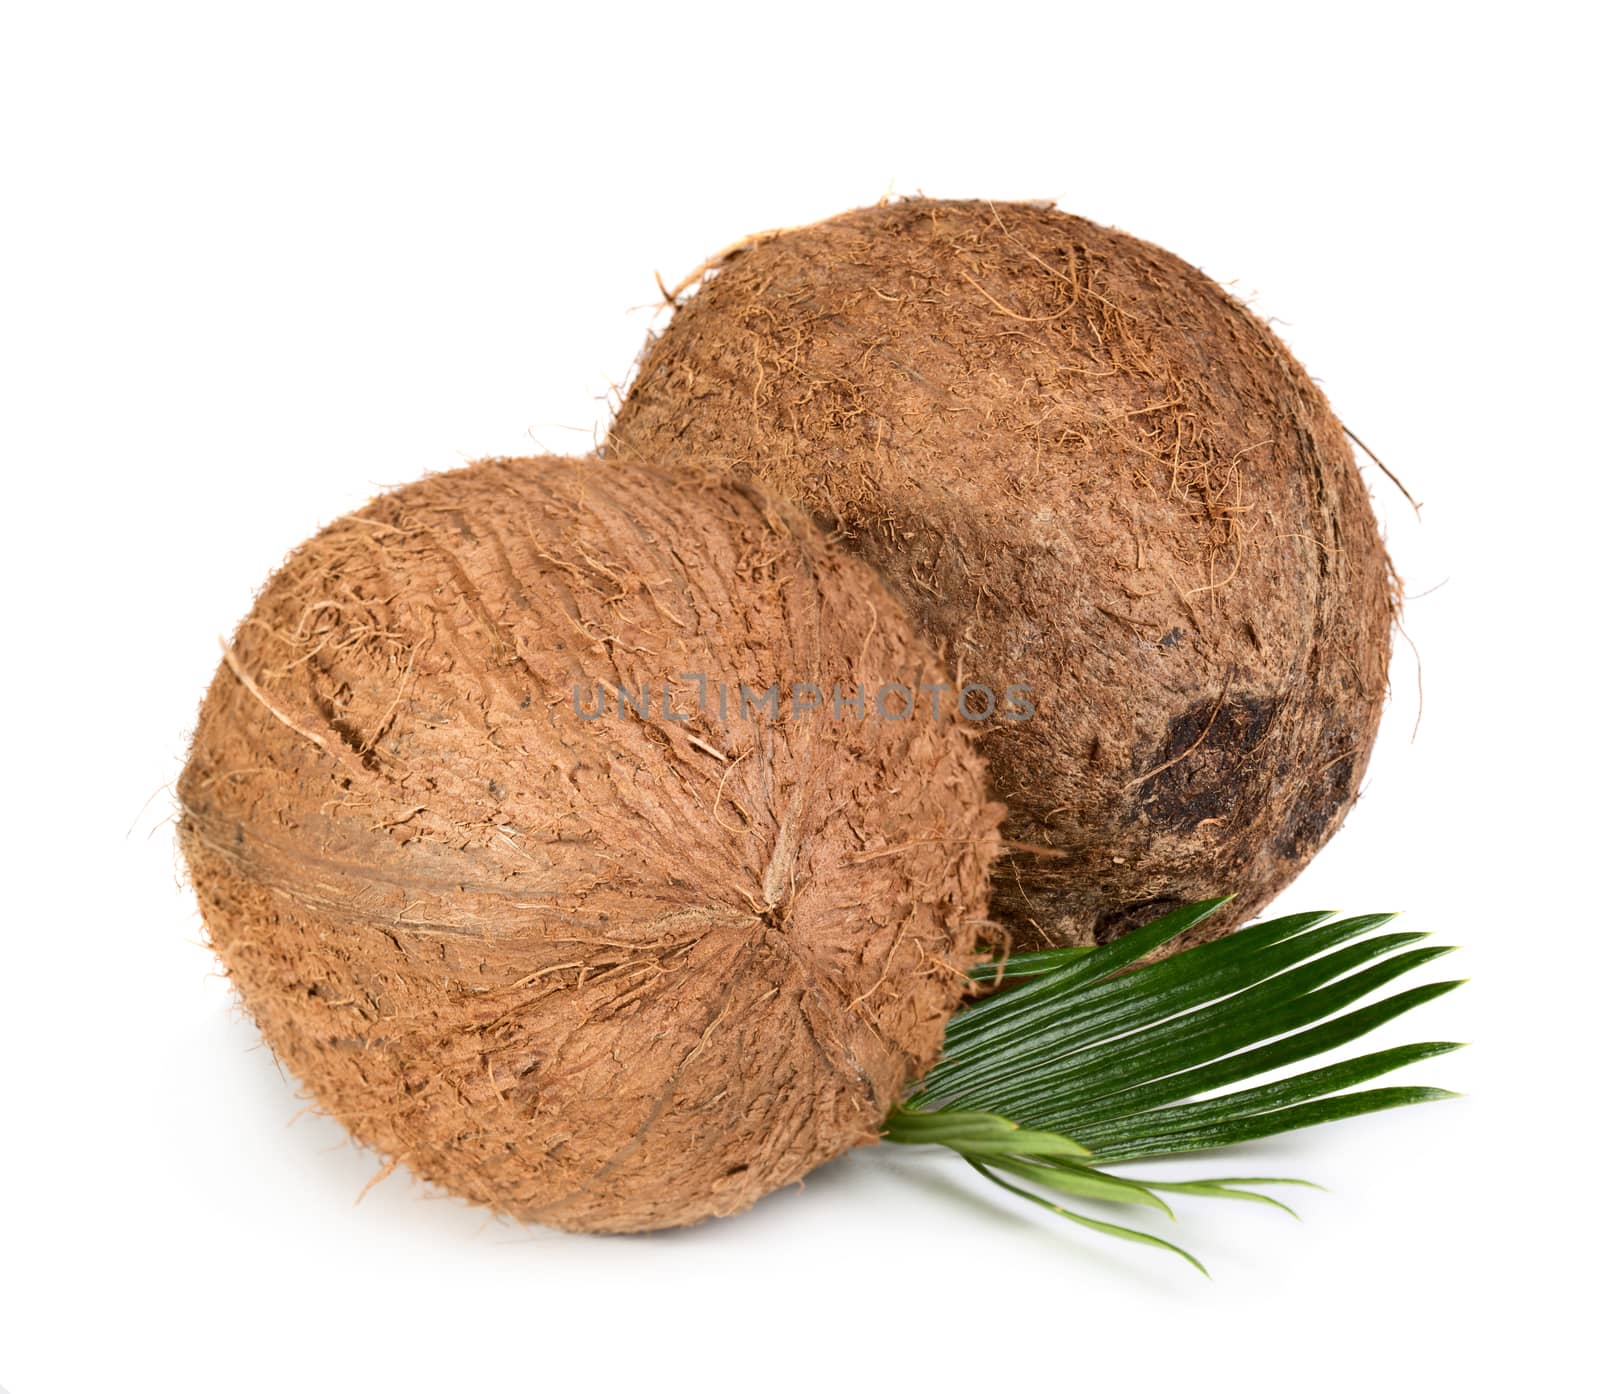 Two coconuts by Valengilda